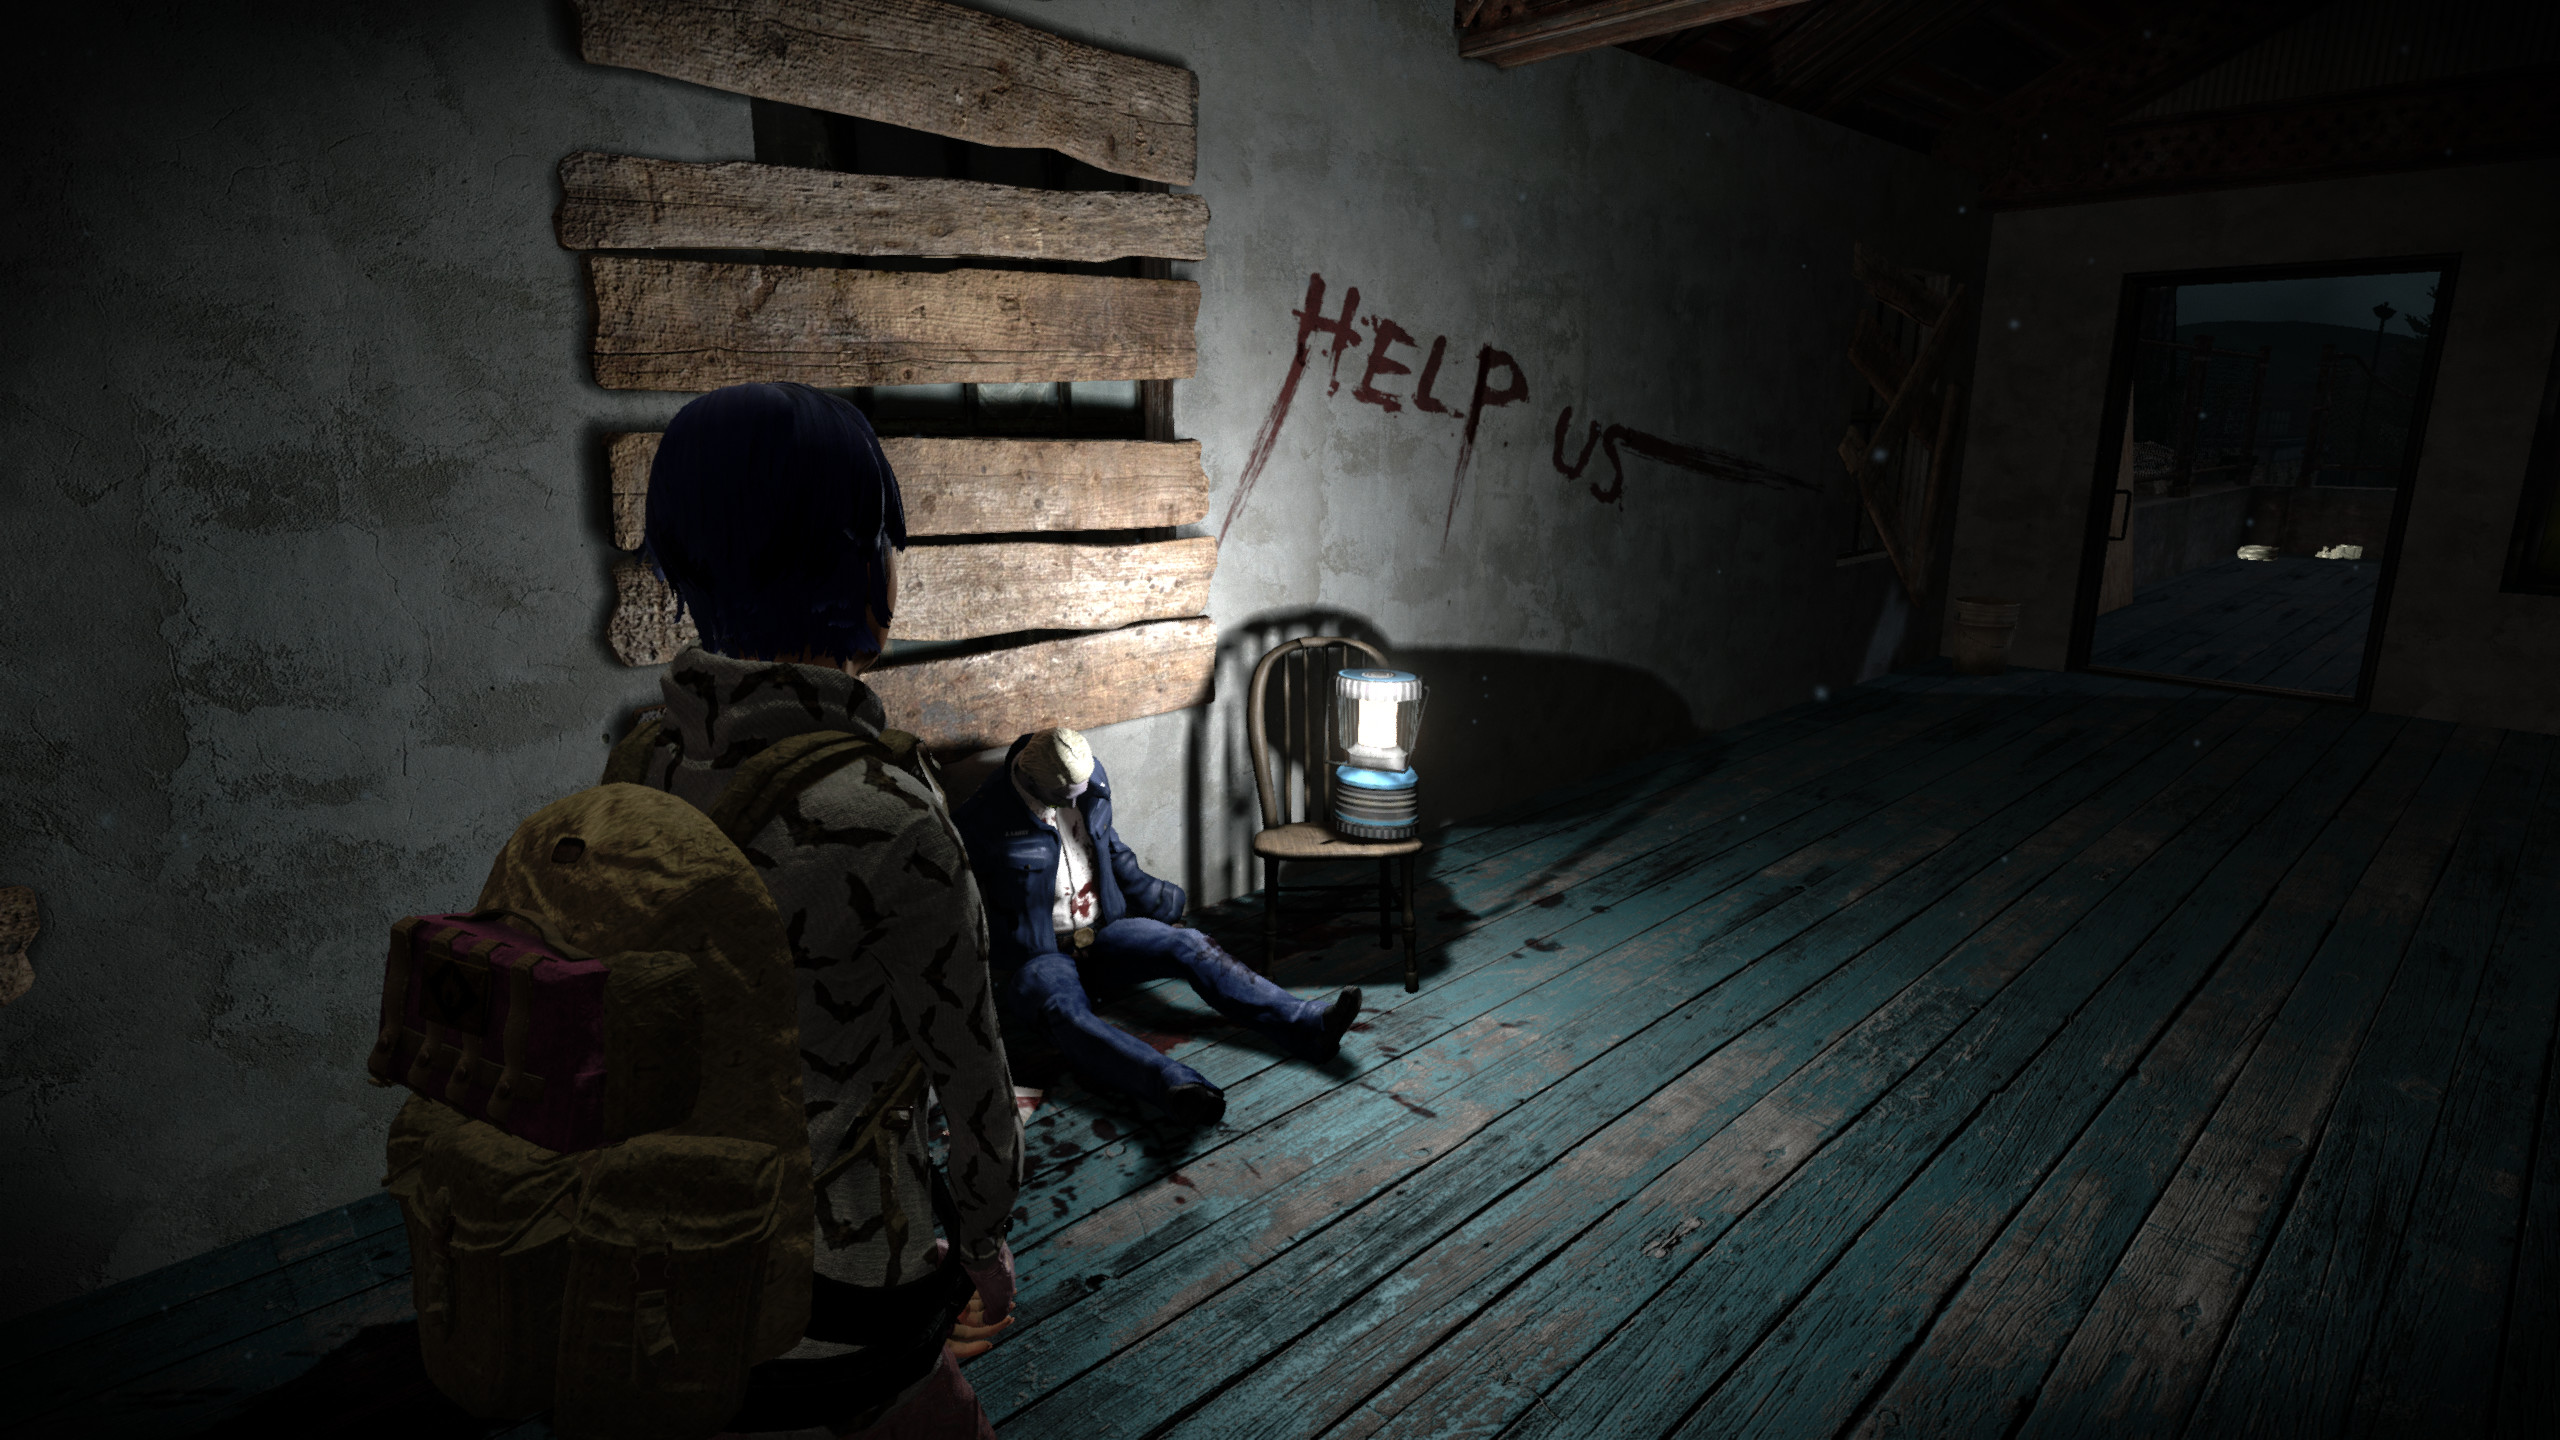 Alone in the Dark: Illumination screenshot